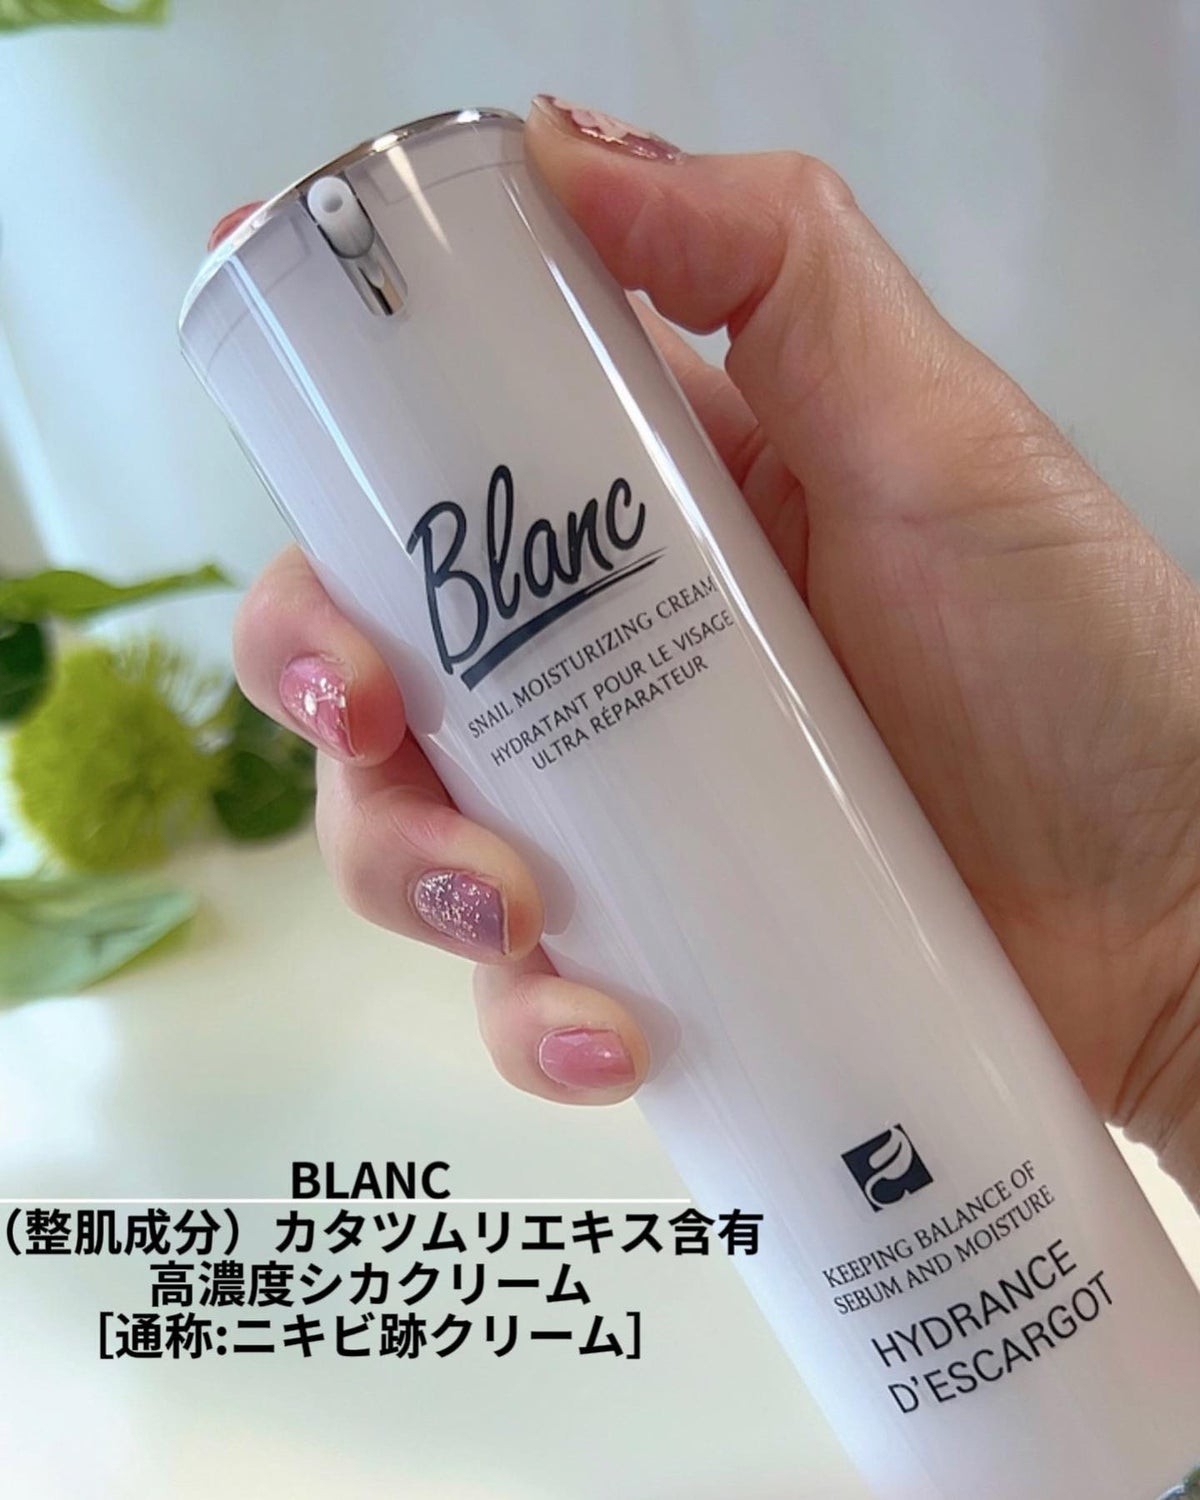 Blanc(ブラン)カタツムリエキス含有高濃縮シカクリーム×2 - フェイス 